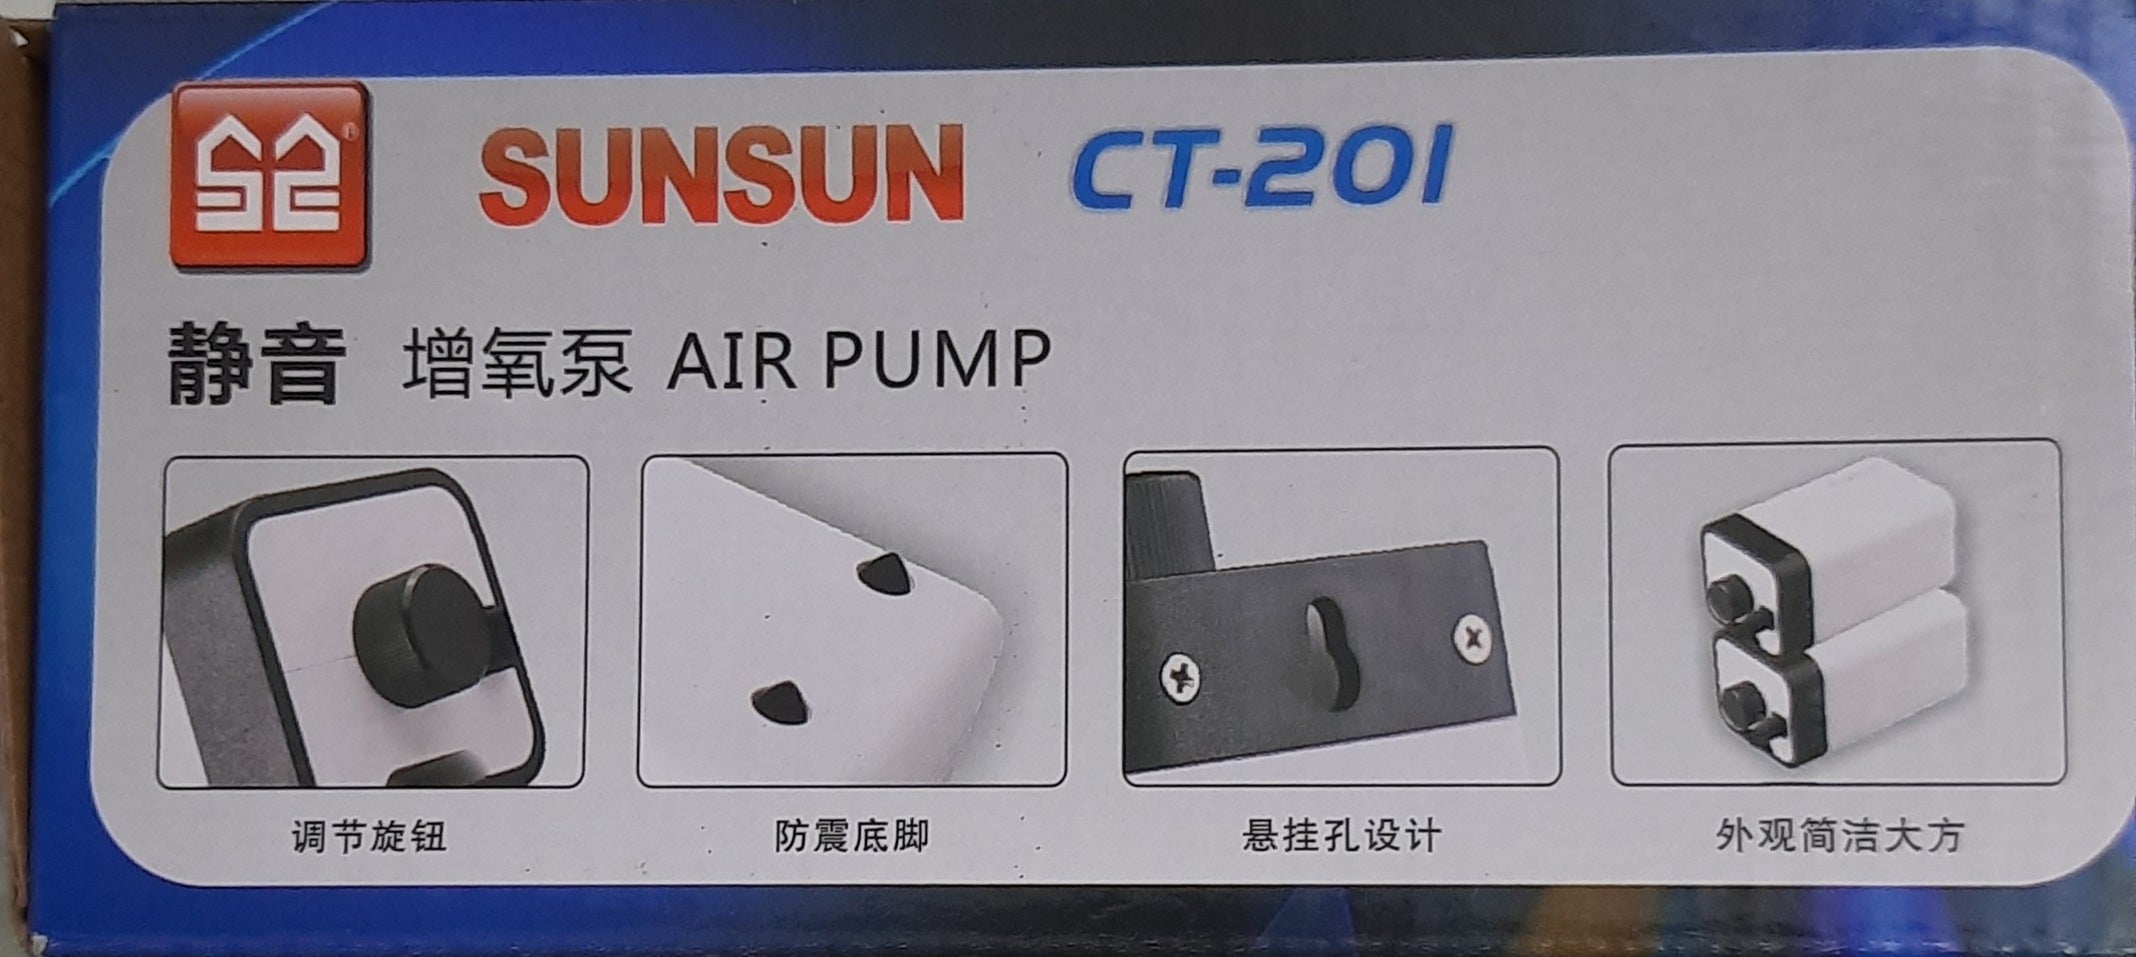 Sunsun CT-201 Air Pump with Controller